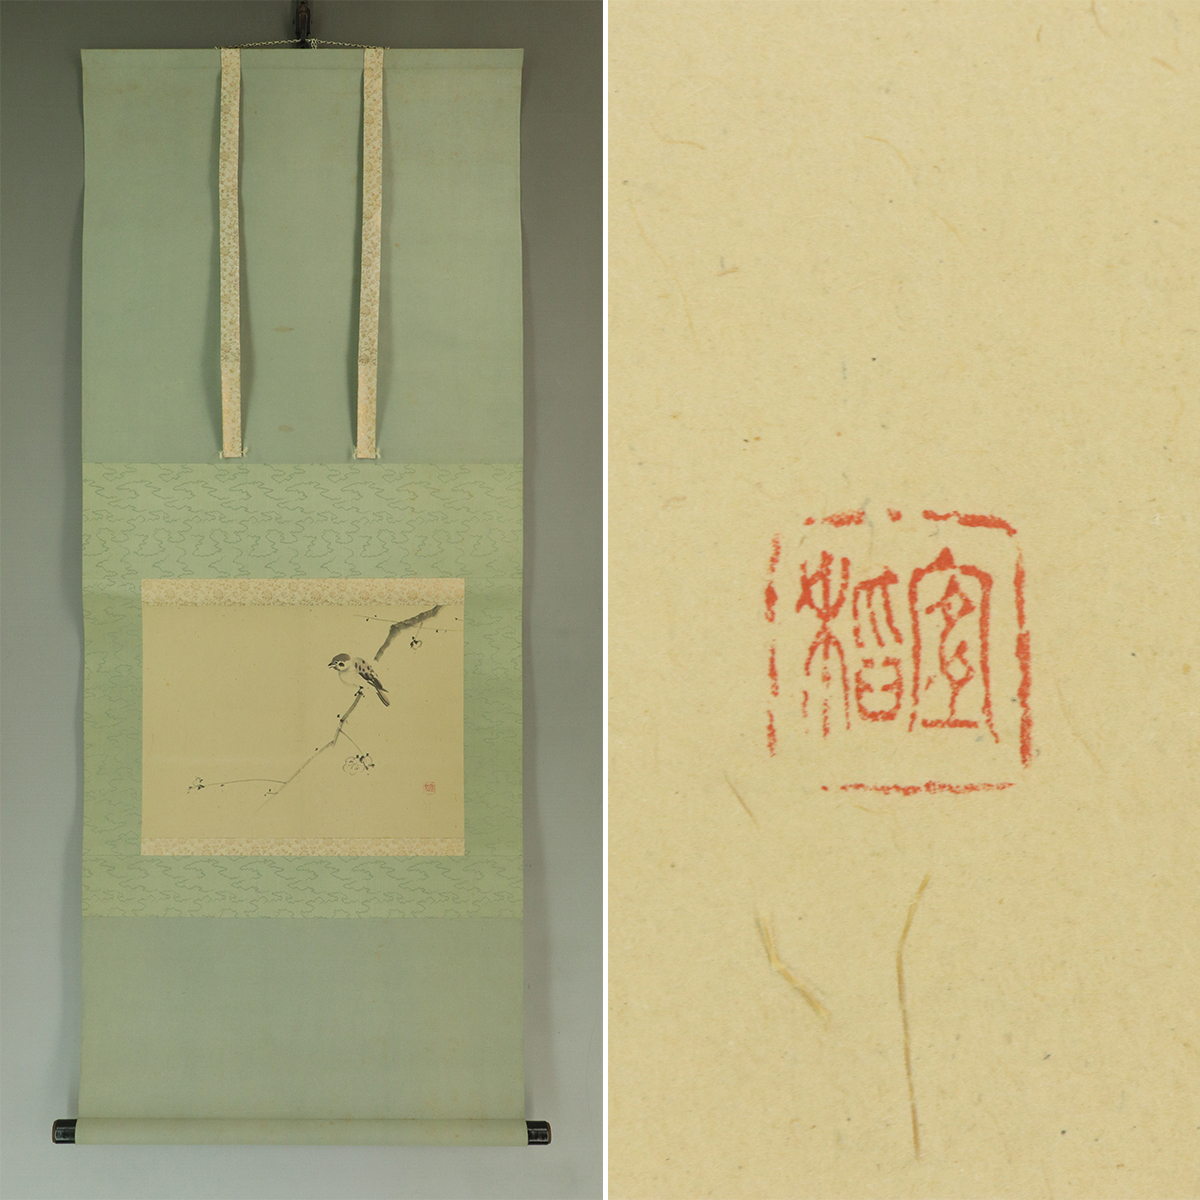 [Authentisch] Yoshina Morimura [Pflaume und Spatz] ◆Papierbuch◆Hängerolle u06195b, Malerei, Japanische Malerei, Blumen und Vögel, Tierwelt